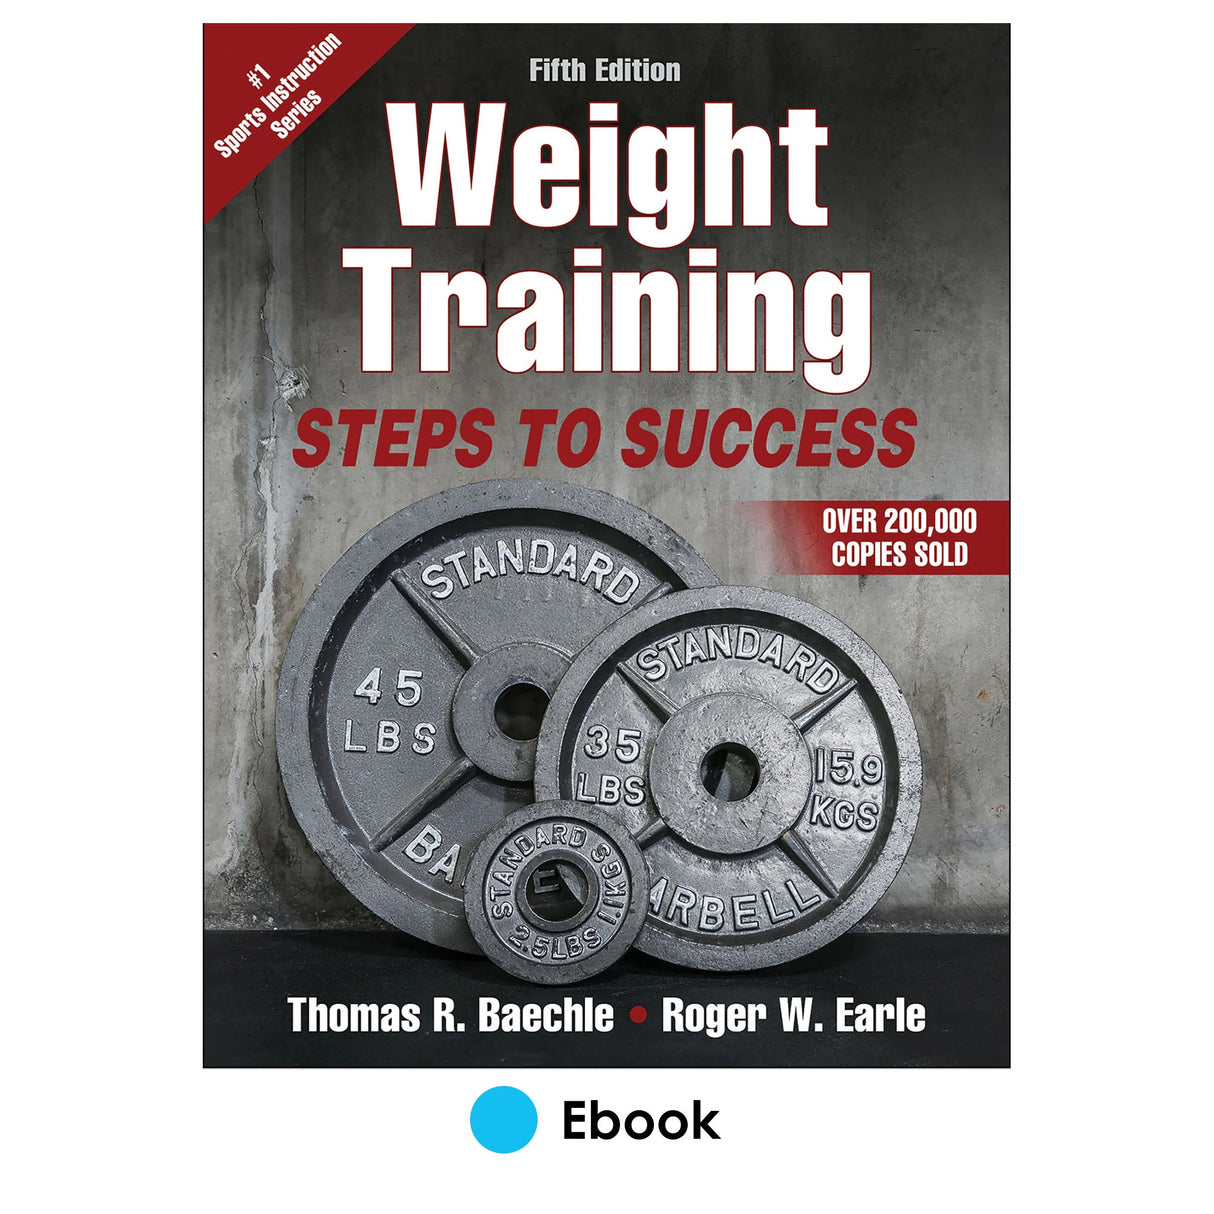 Weight Training 5th Edition epub